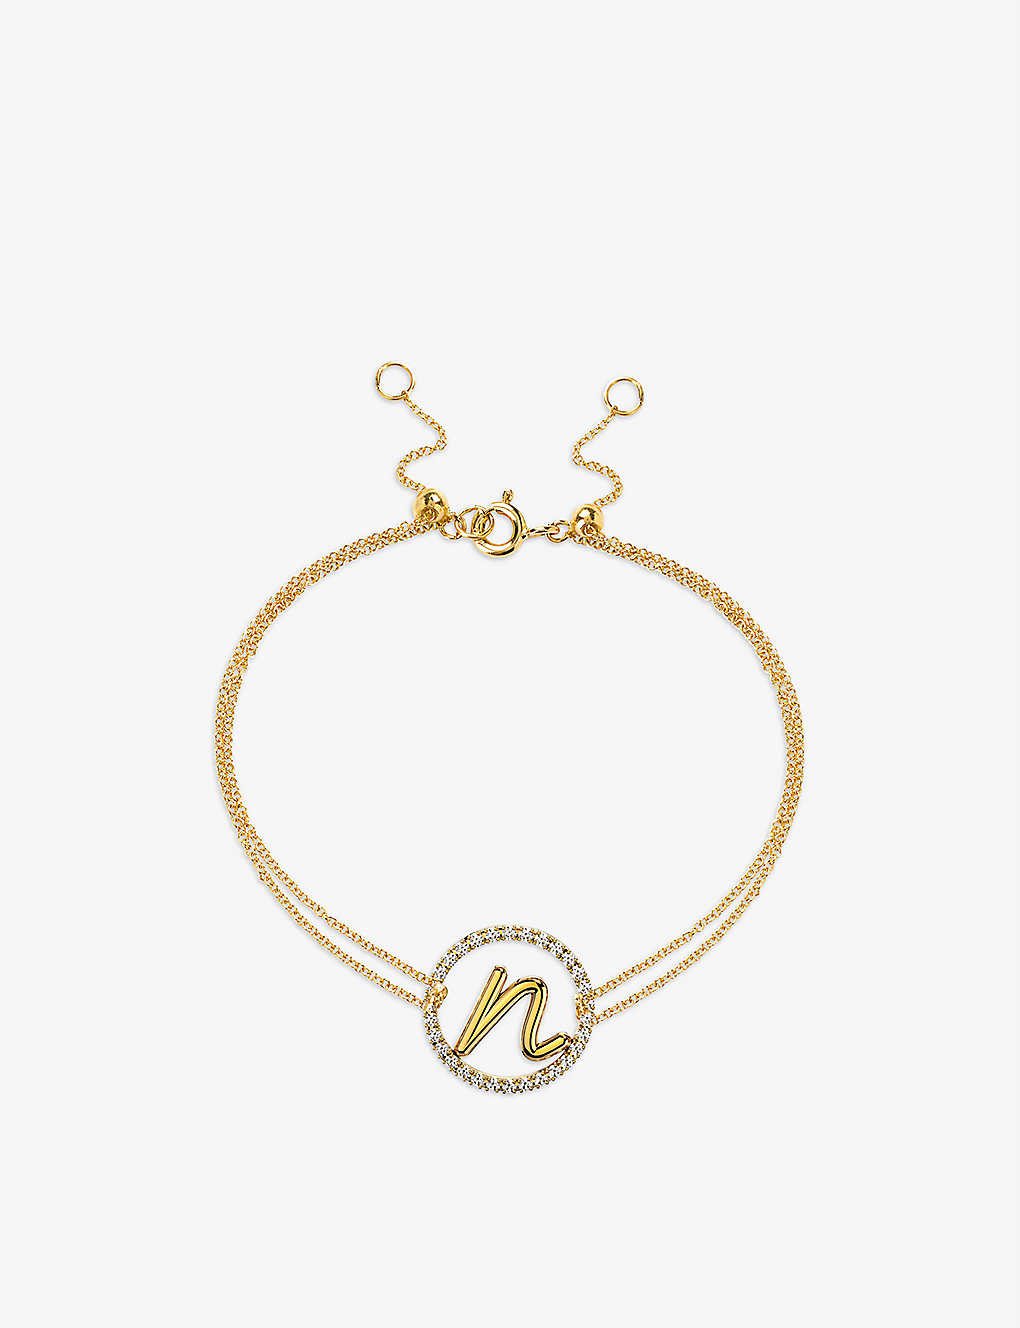 The ALKEMISTRY 18kt Yellow Gold Love Letter E Initial Bracelet